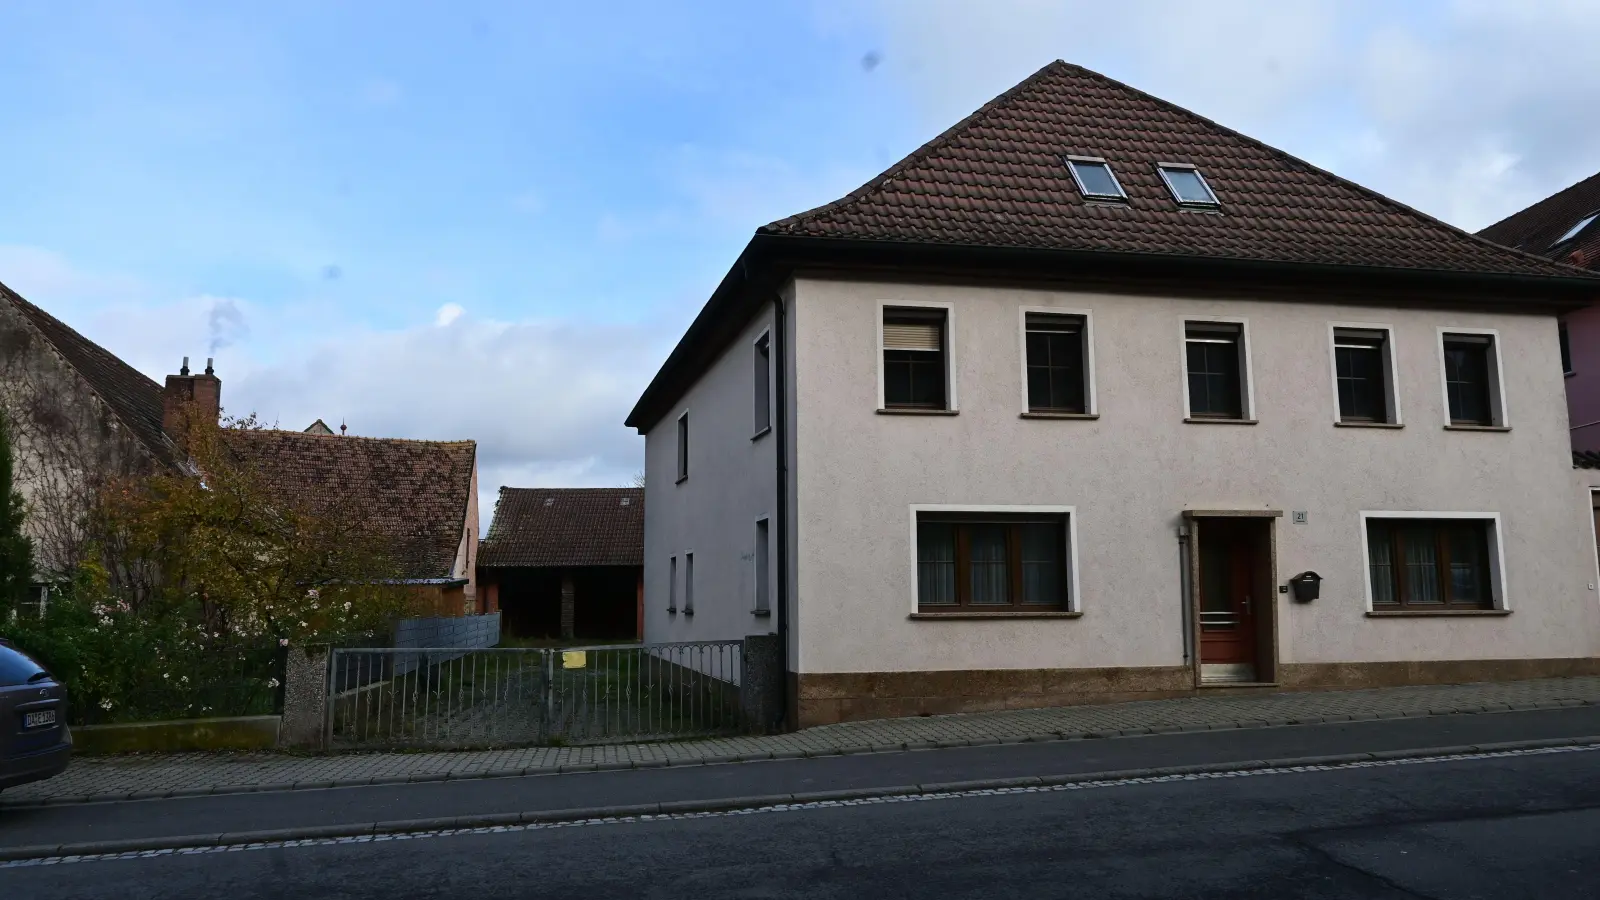 Dieses Haus in der Hauptstraße wird die Gemeinde Langenfeld erwerben, und hofft darauf, innerhalb eines Jahres Geflüchteten dort Wohnraum anbieten zu können. Möglich machen es hohe Zuschüsse des Bundes. (Foto: Judith Marschall)